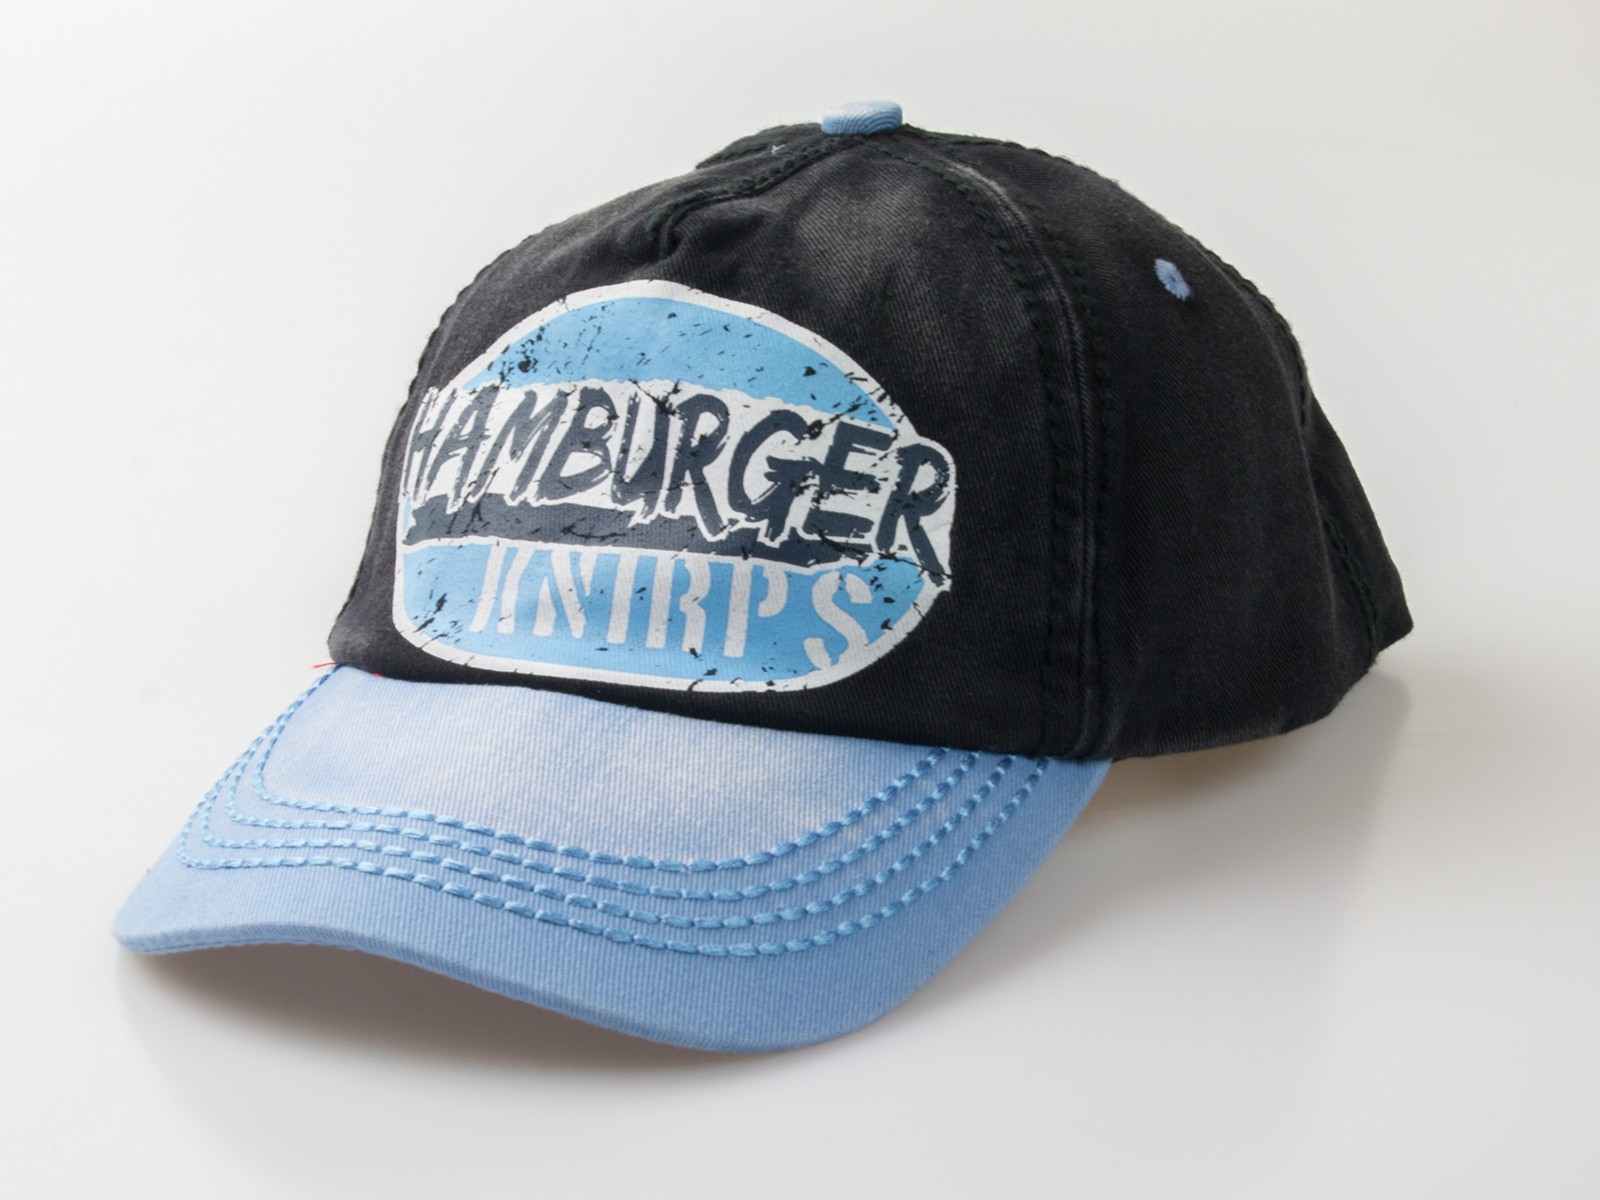 Baseball-Cap "Hamburger Knirps"